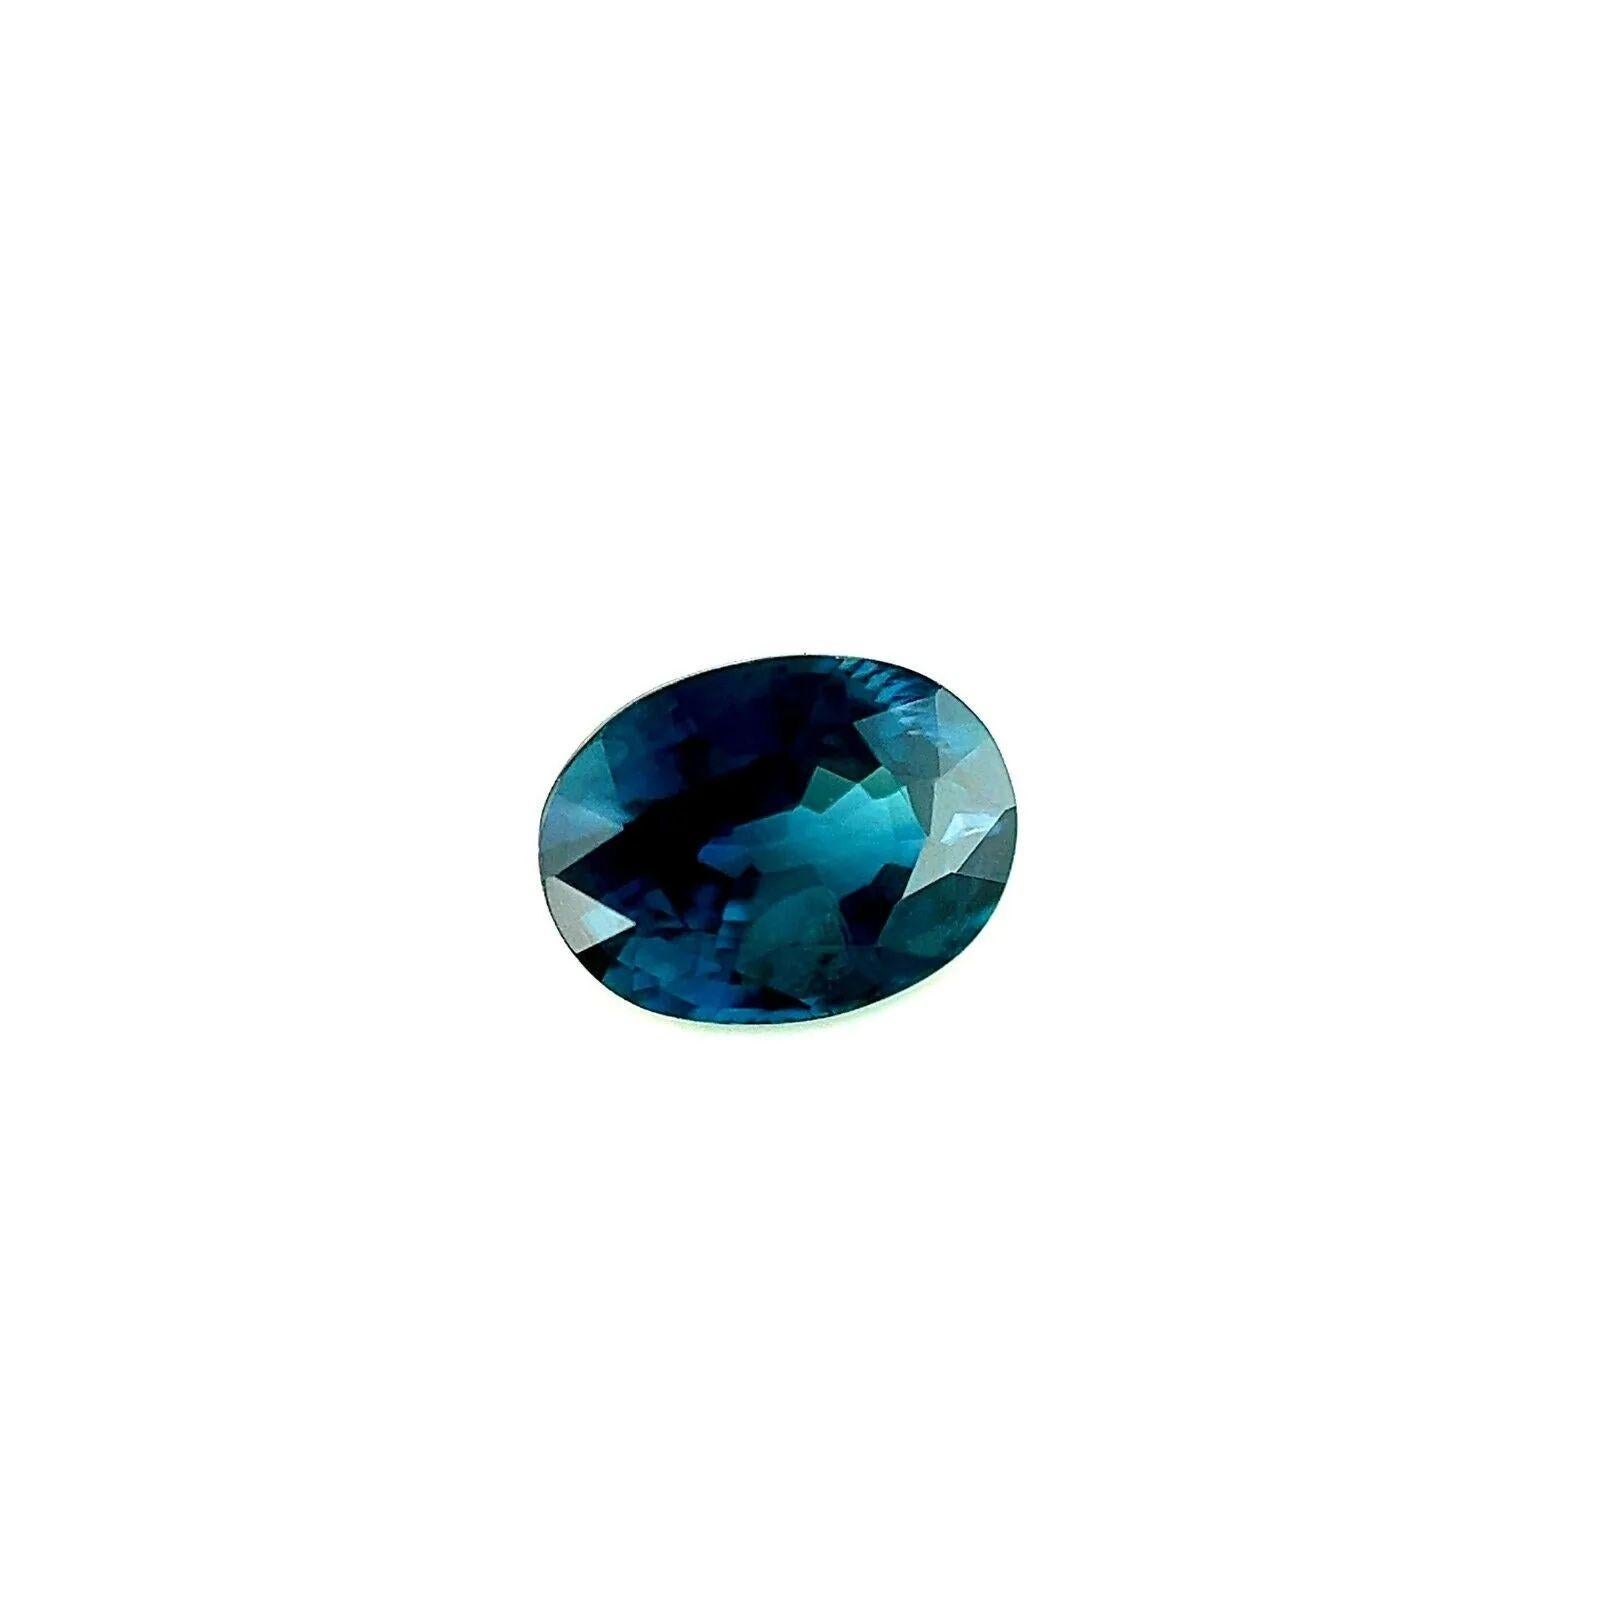 1,09ct AIG Certified Deep Rare Blue Sapphire Oval Cut 6.6x5mm Lose Edelstein

AIG Certified Deep Blue Sapphire Edelstein.
1,09 Karat Saphir mit einer schönen tiefblauen Farbe.
Vollständige Zertifizierung durch AIG, die bestätigt, dass es sich um